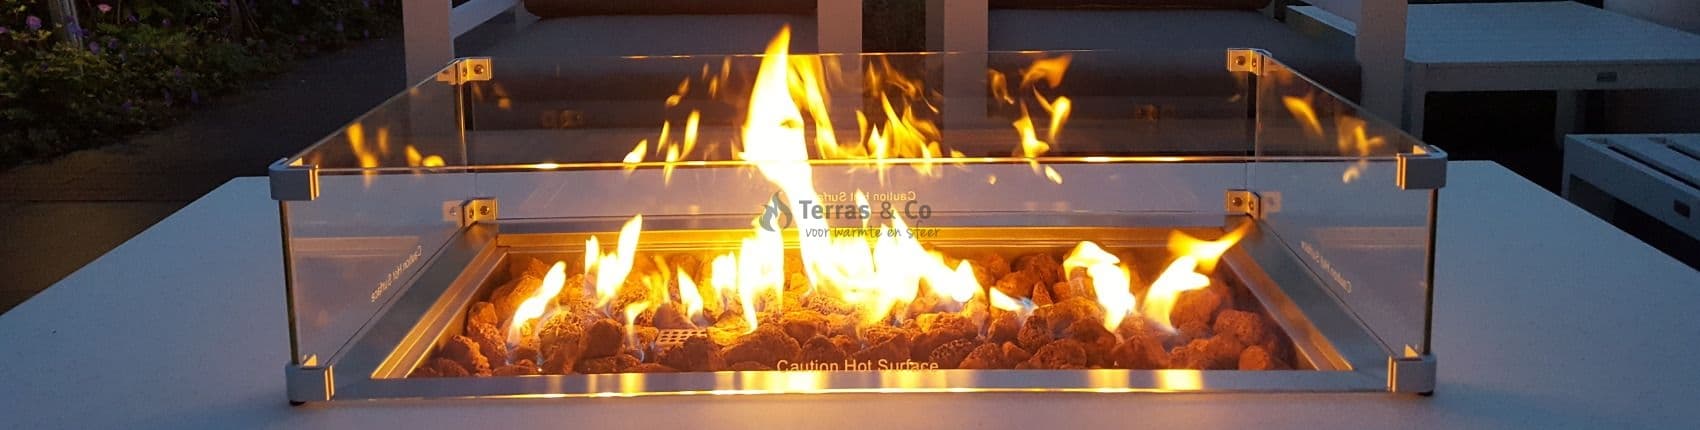 uitgehongerd boog programma Terras & Co | De mooiste Vuurtafels, Inbouwbranders en meer!